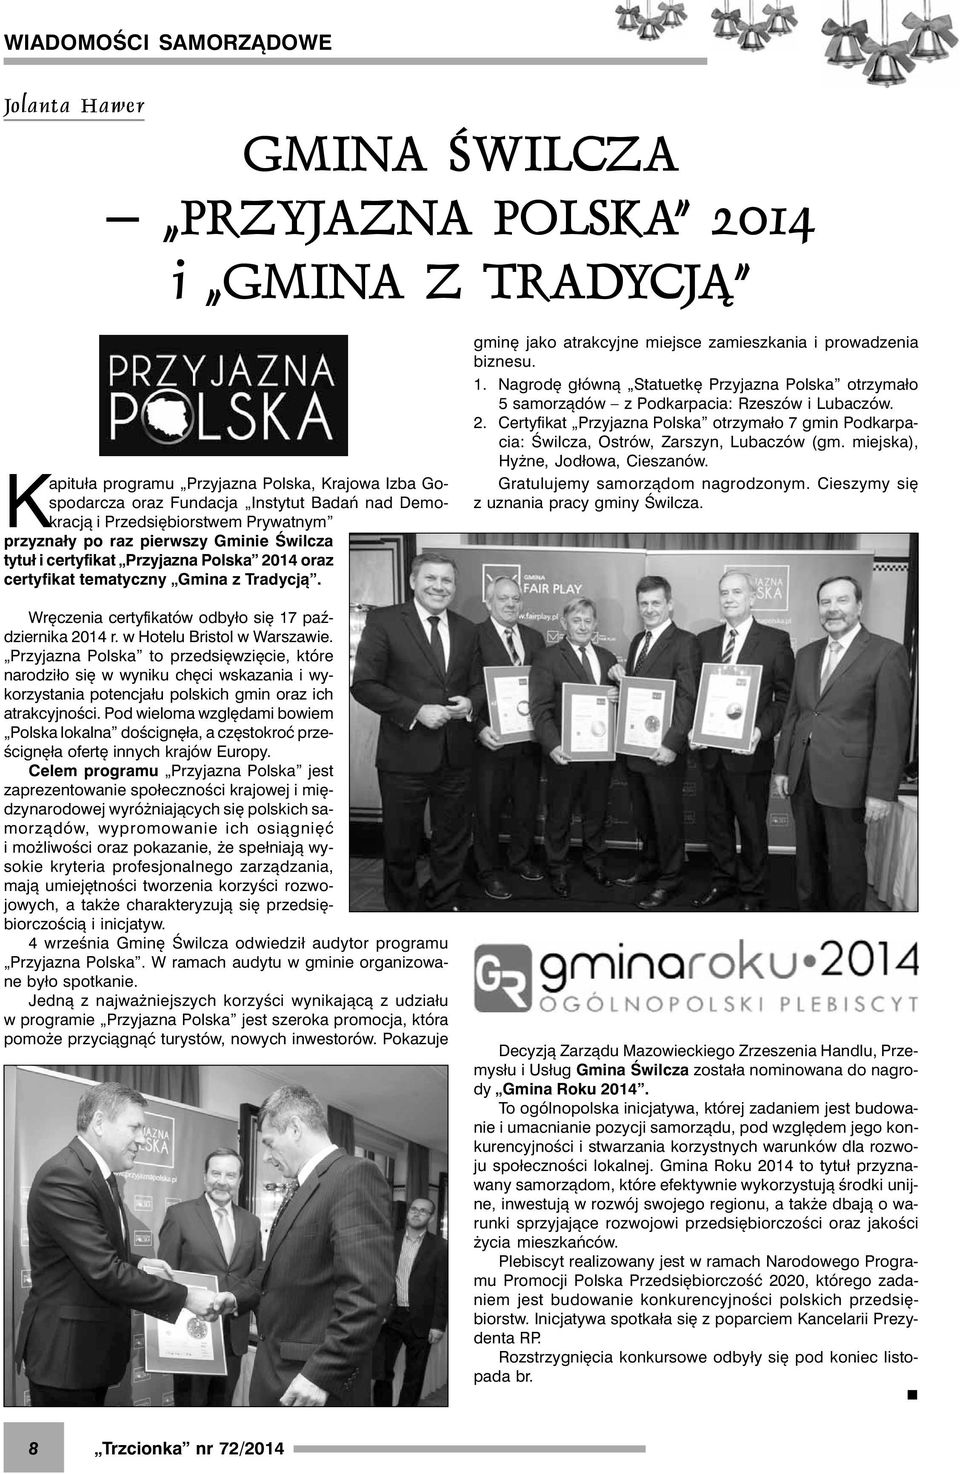 Wręczenia certyfikatów odbyło się 17 października 2014 r. w Hotelu Bristol w Warszawie.